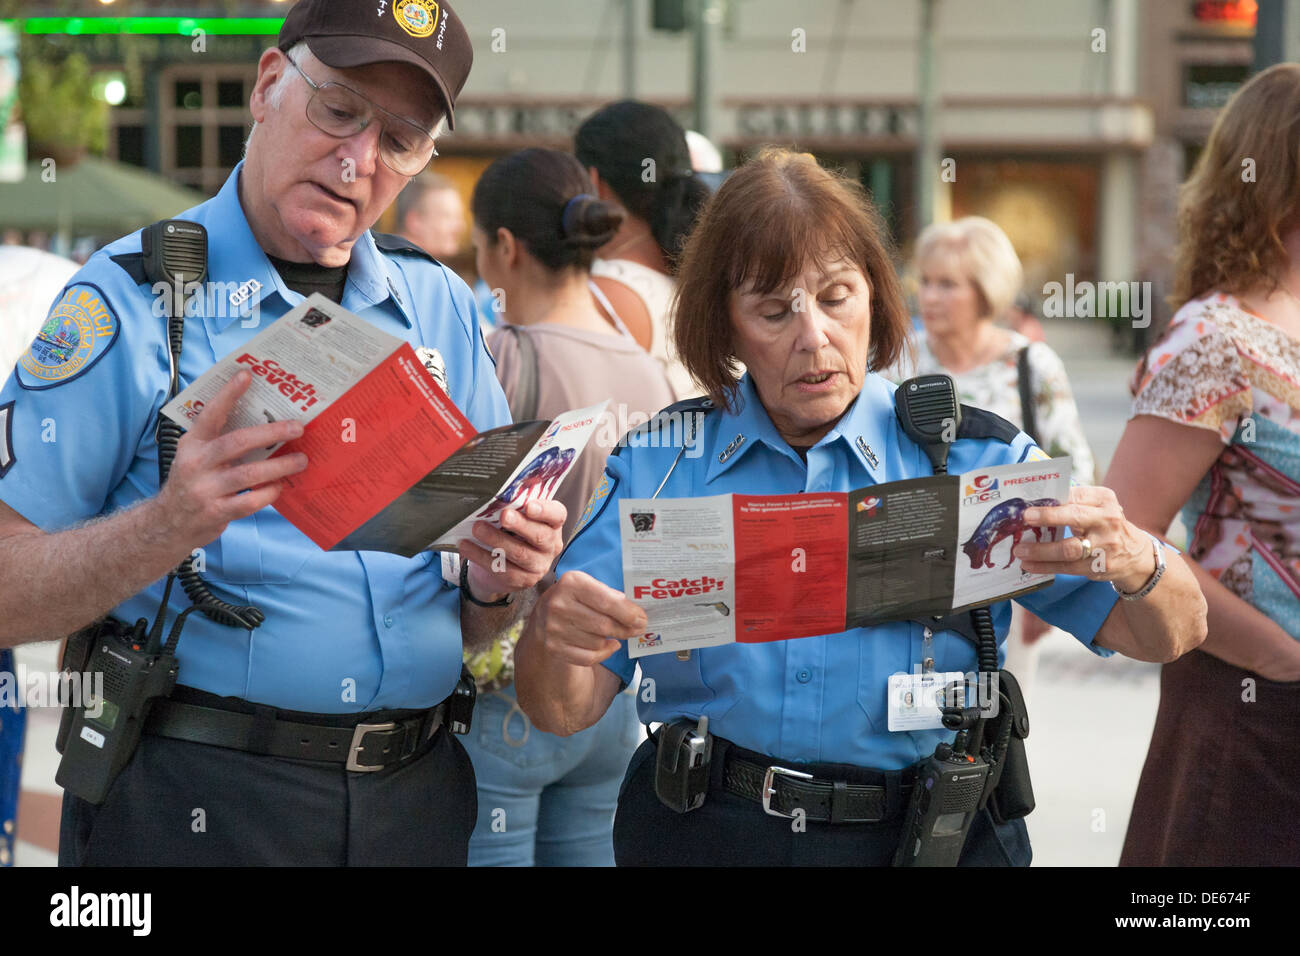 Dos oficiales de policía City Watch lectura fiebre caballo folletos en acto público en la plaza del centro de la ciudad de Ocala, Florida Foto de stock